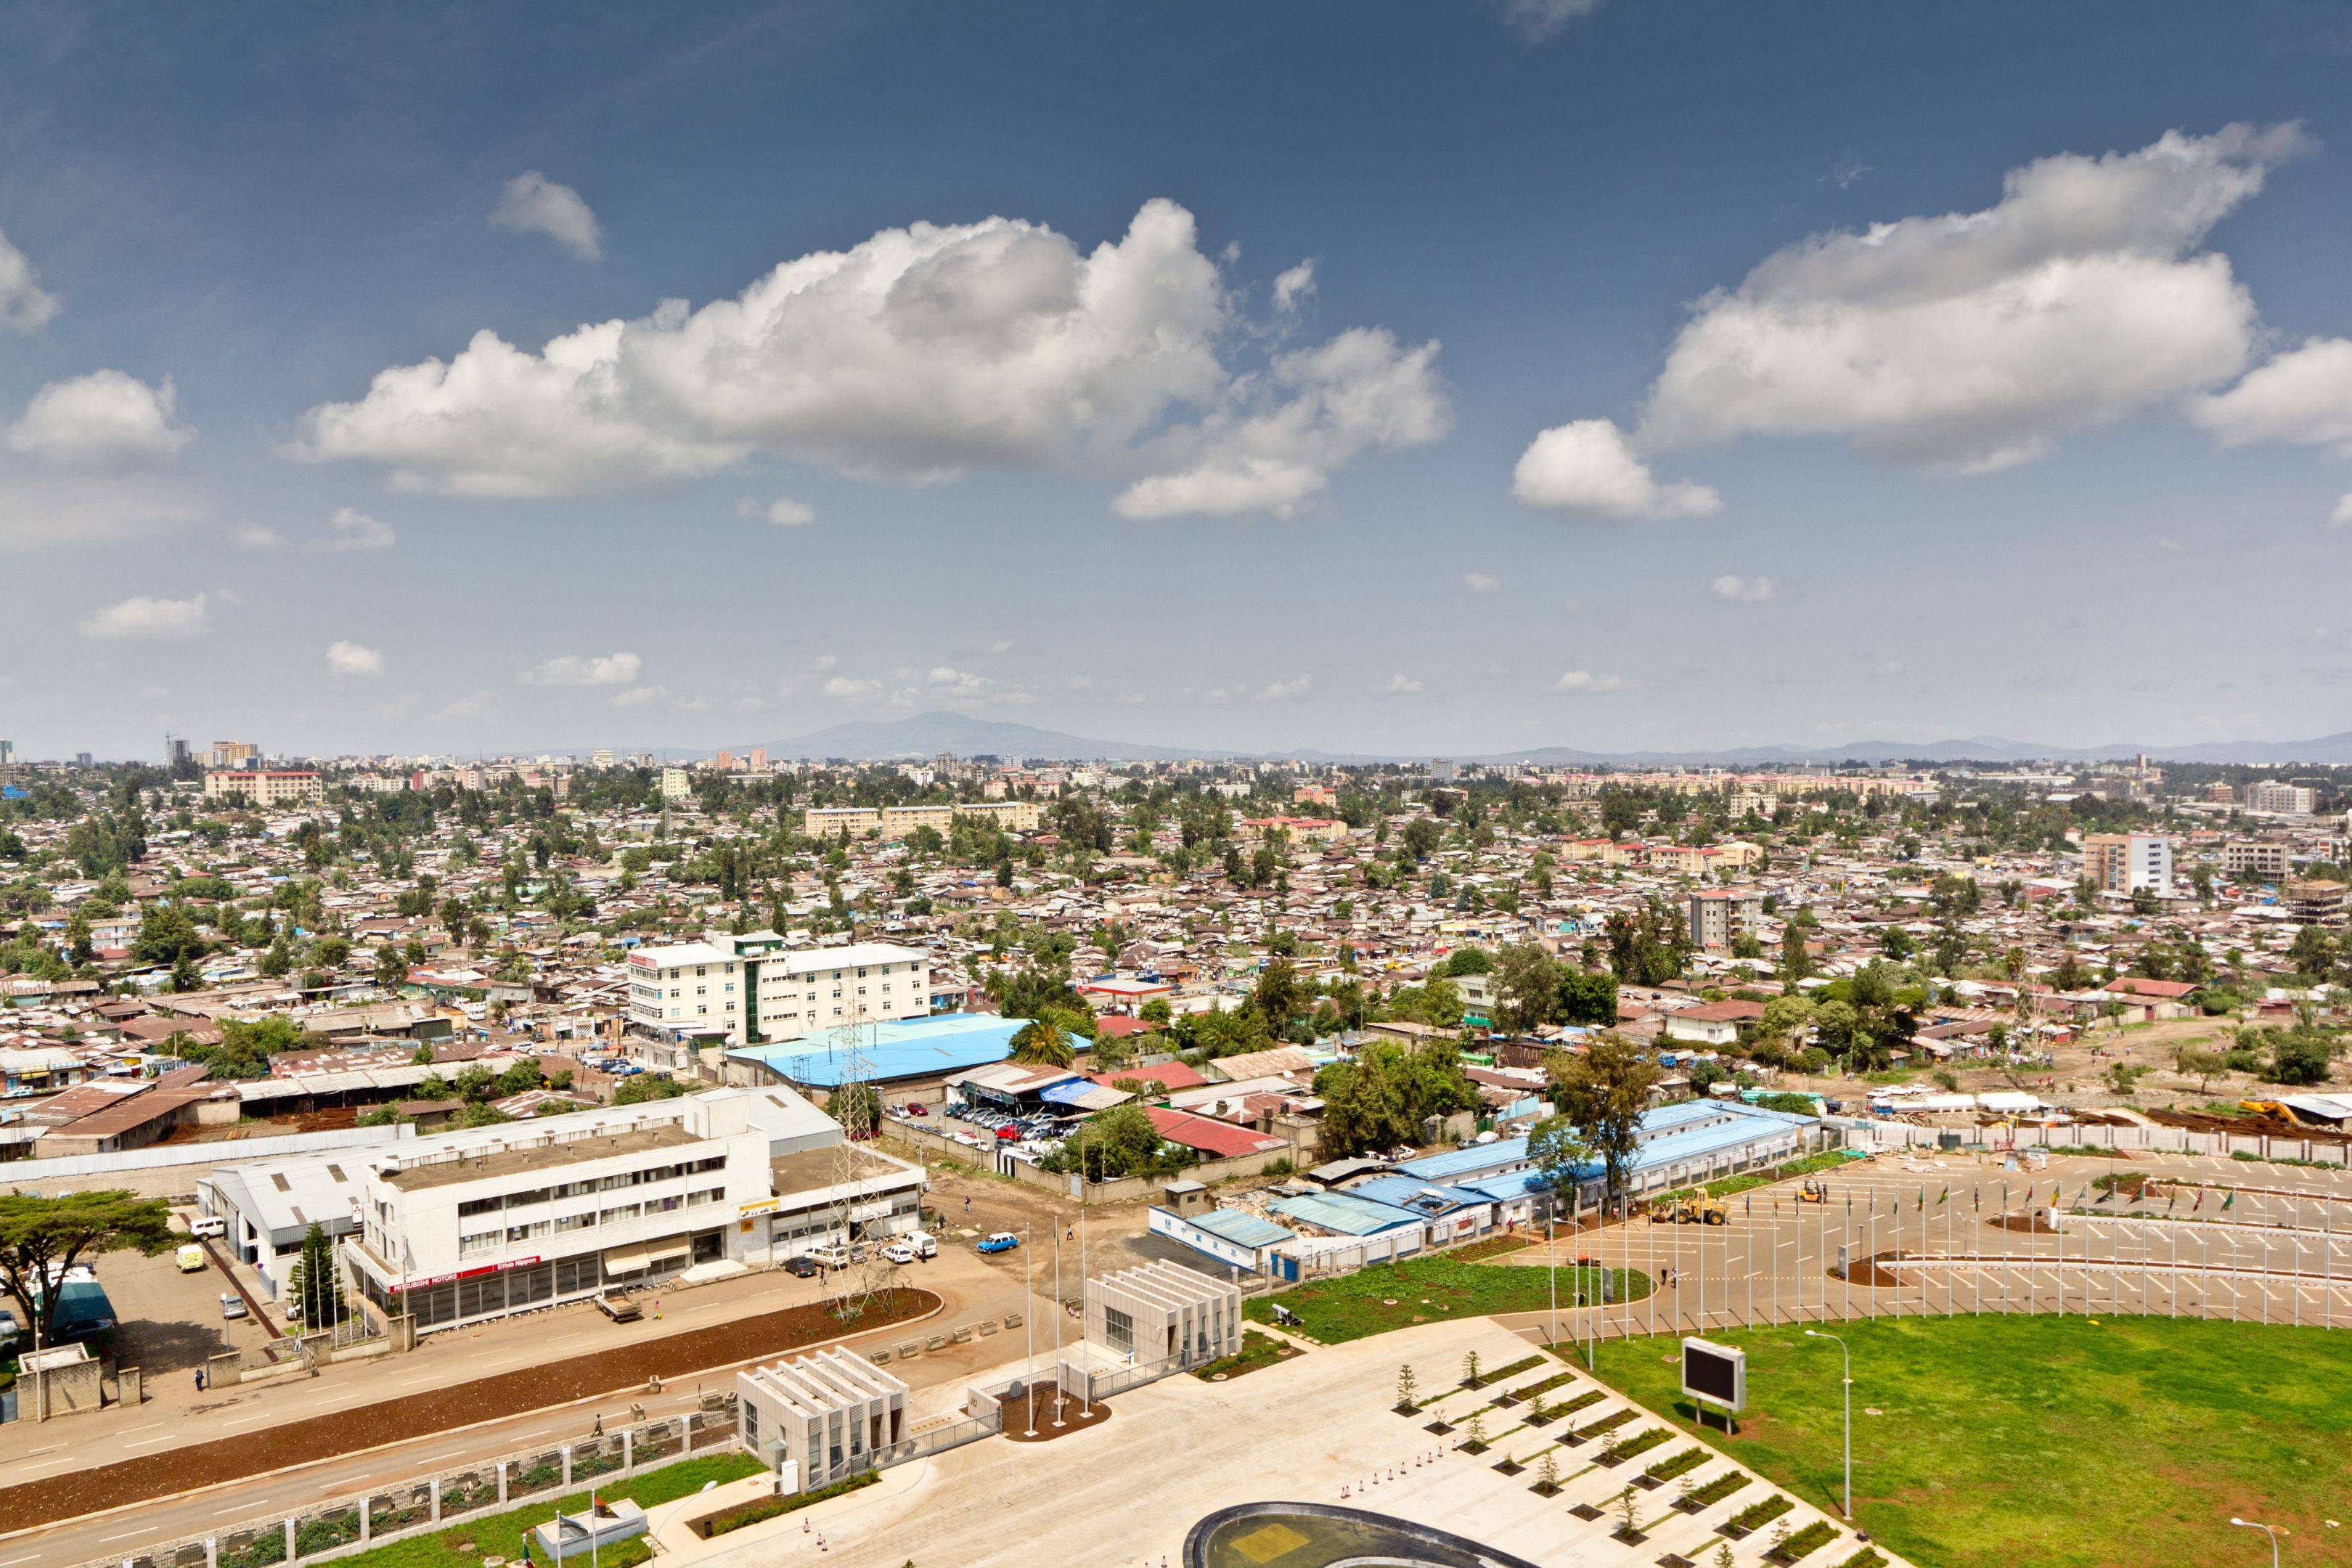 ¡Bienvenidos a Etiopía! Visita de la capital